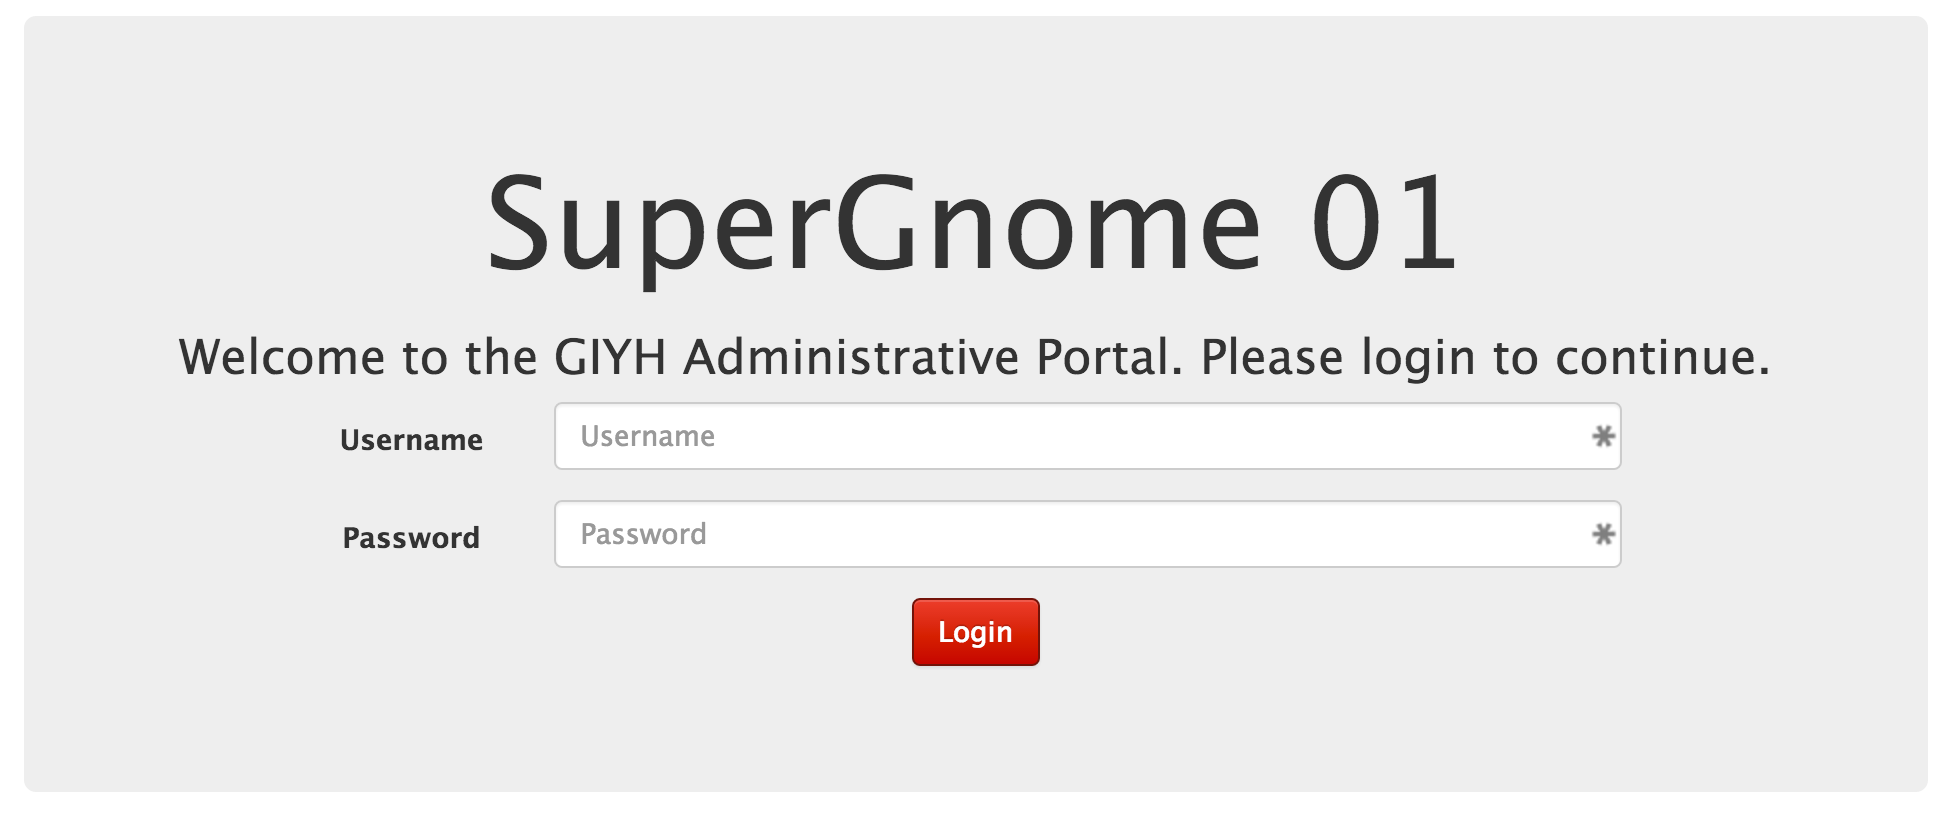 SuperGnome01-web